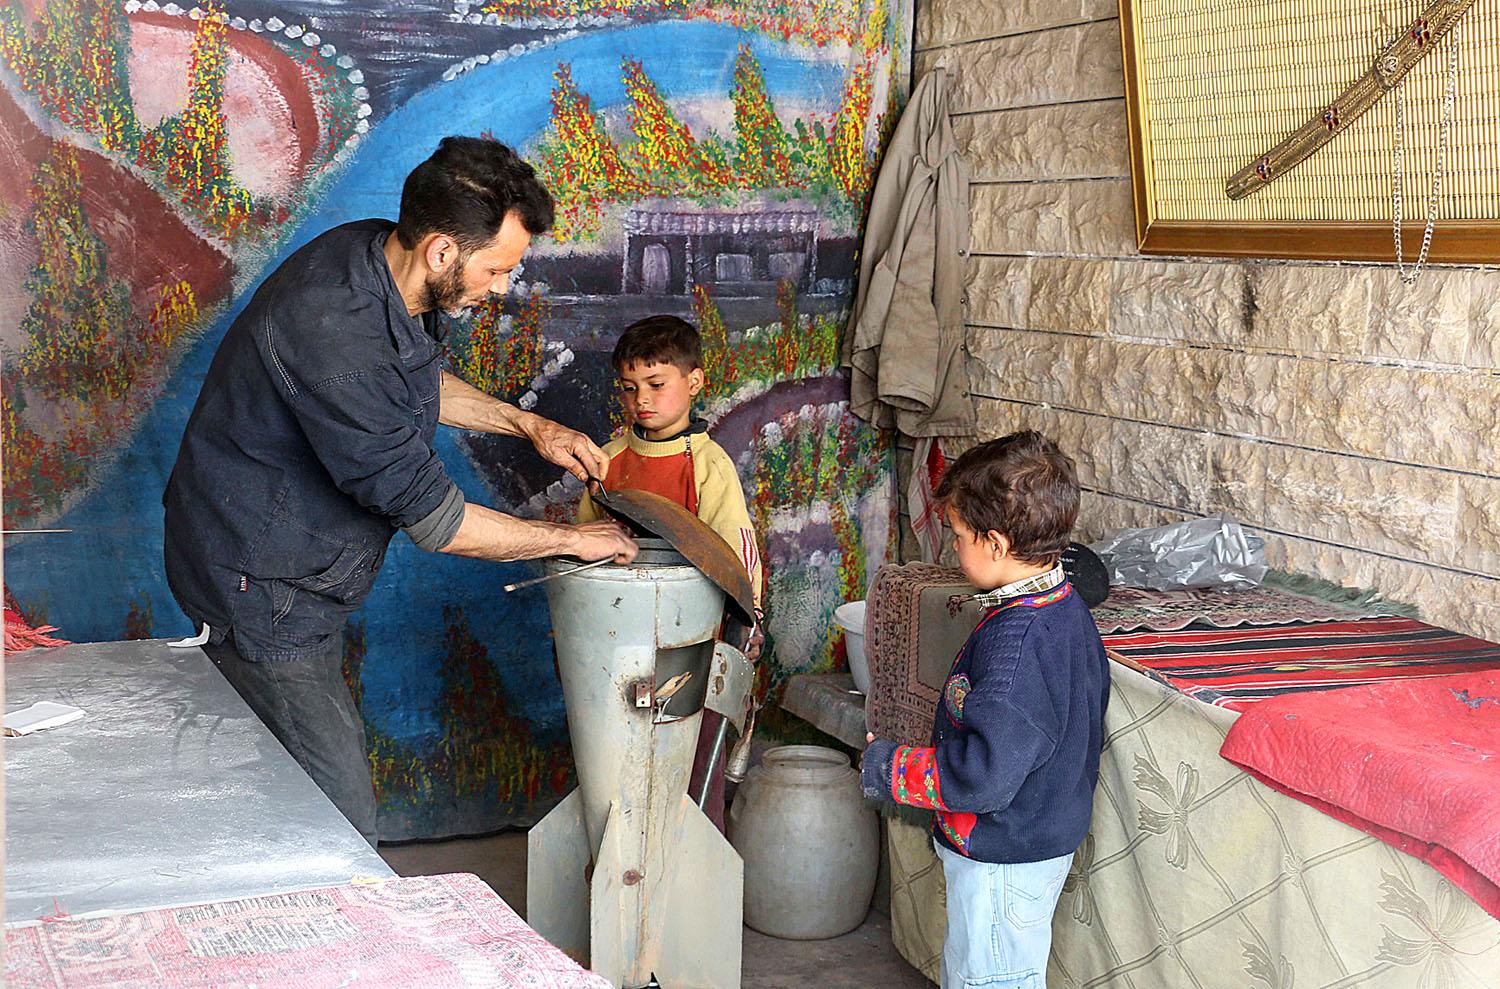 Abu Khaled damaszkuszi péksége rakétából készült tűzhelyet használ